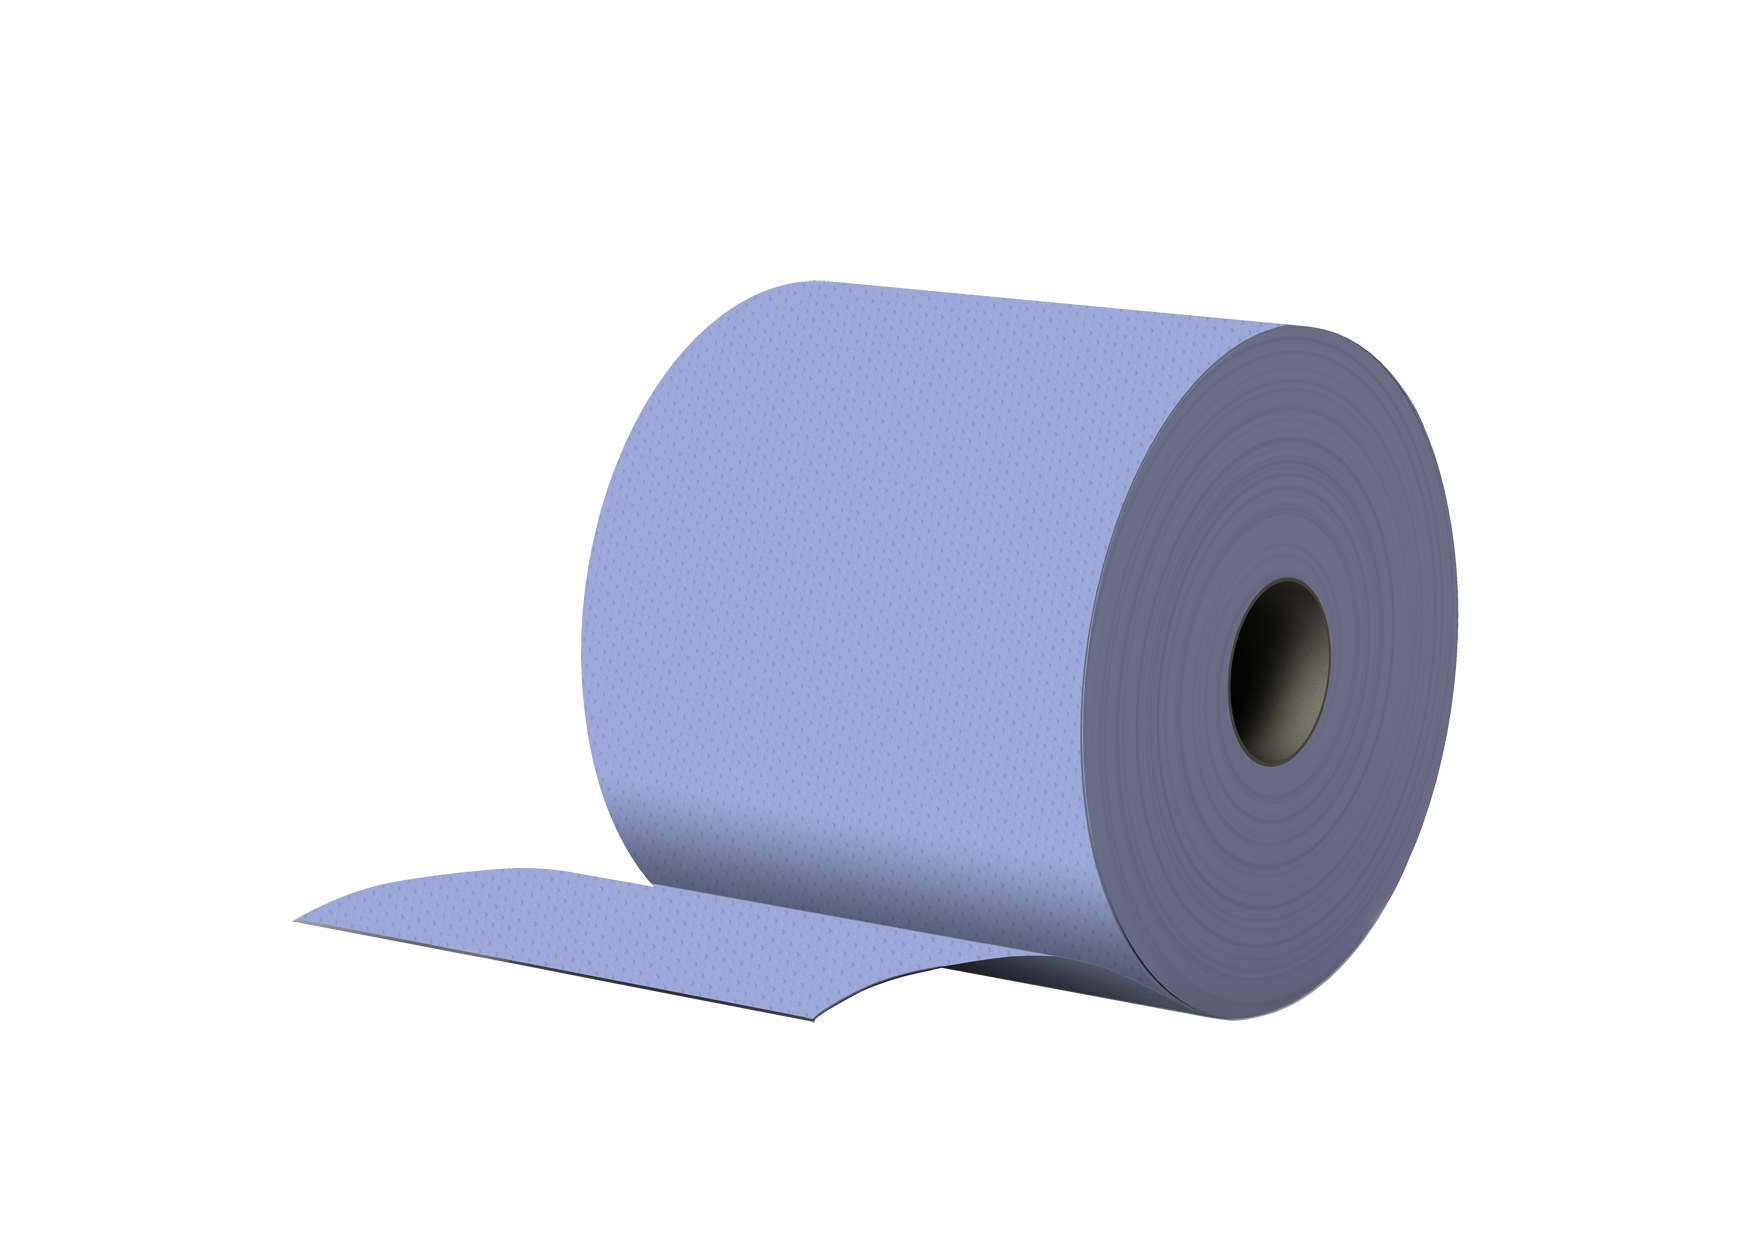 Putzpapier 8 Rollen, 2-lagig, BLAU, recycling, 22x37cm, 1000 Abrisse pro Rolle